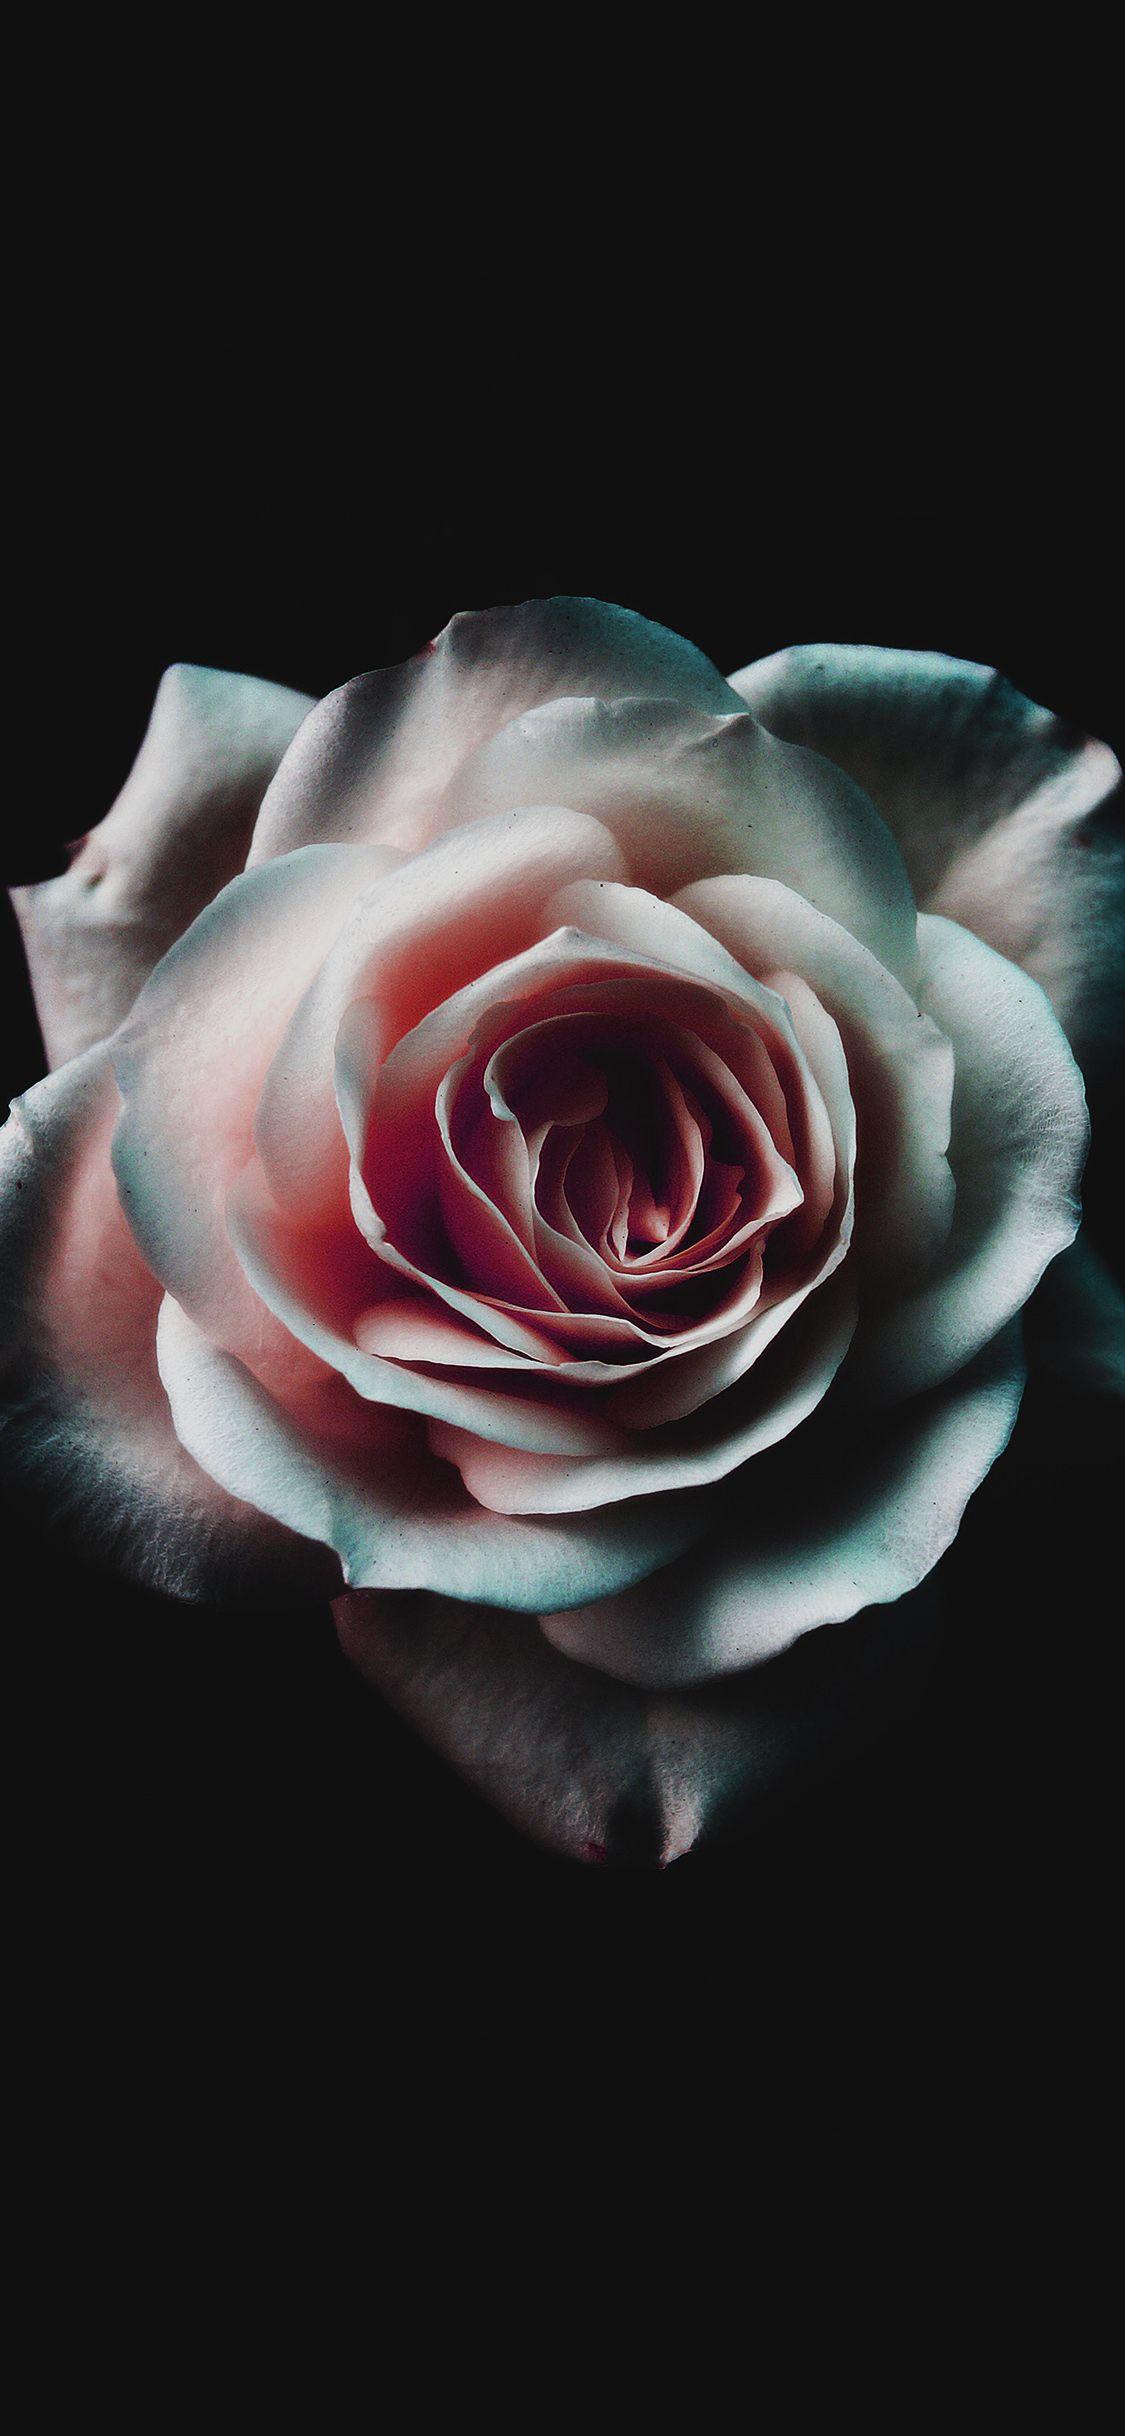 1125x2436 Hoa hồng đẹp nhất Hình nền iPhone X HD